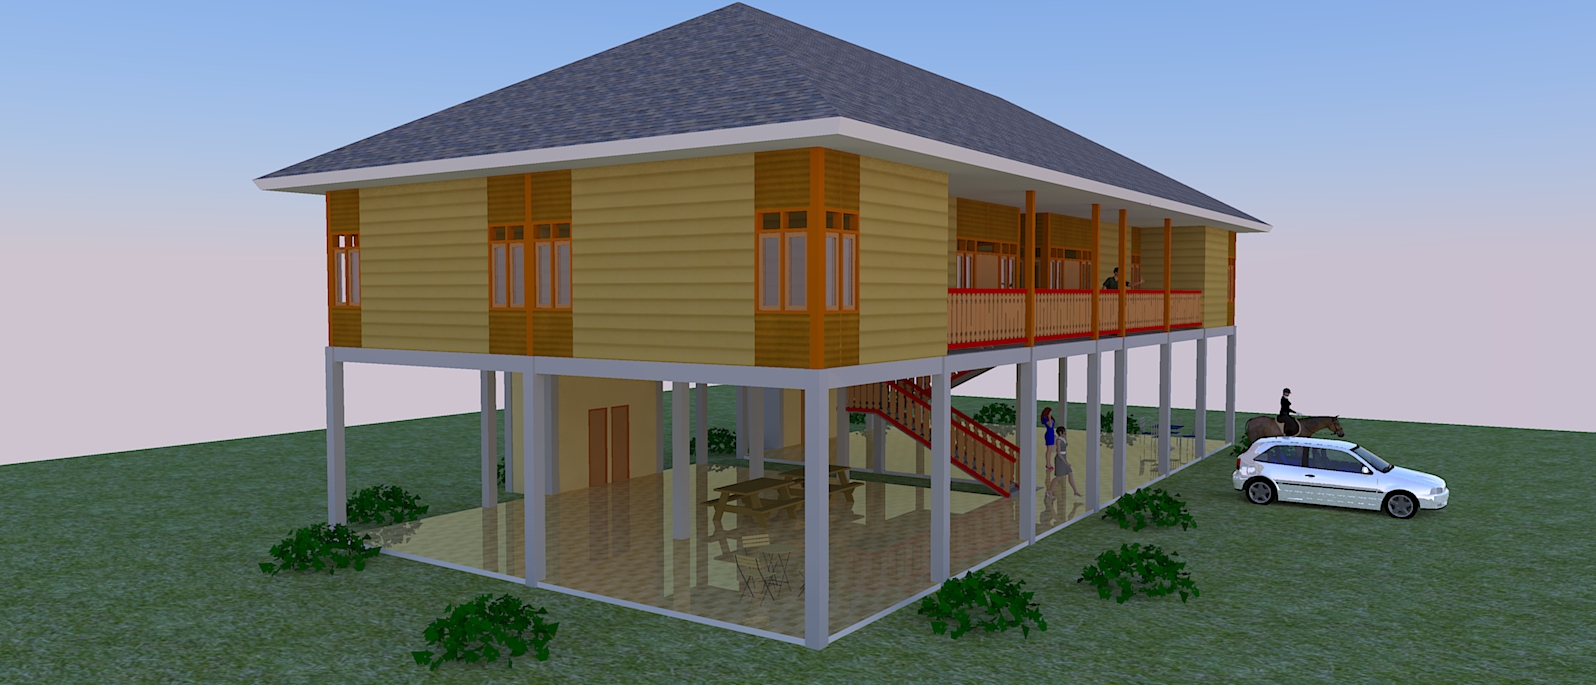 31 Ide Terbaru Desain Rumah Kayu Thailand